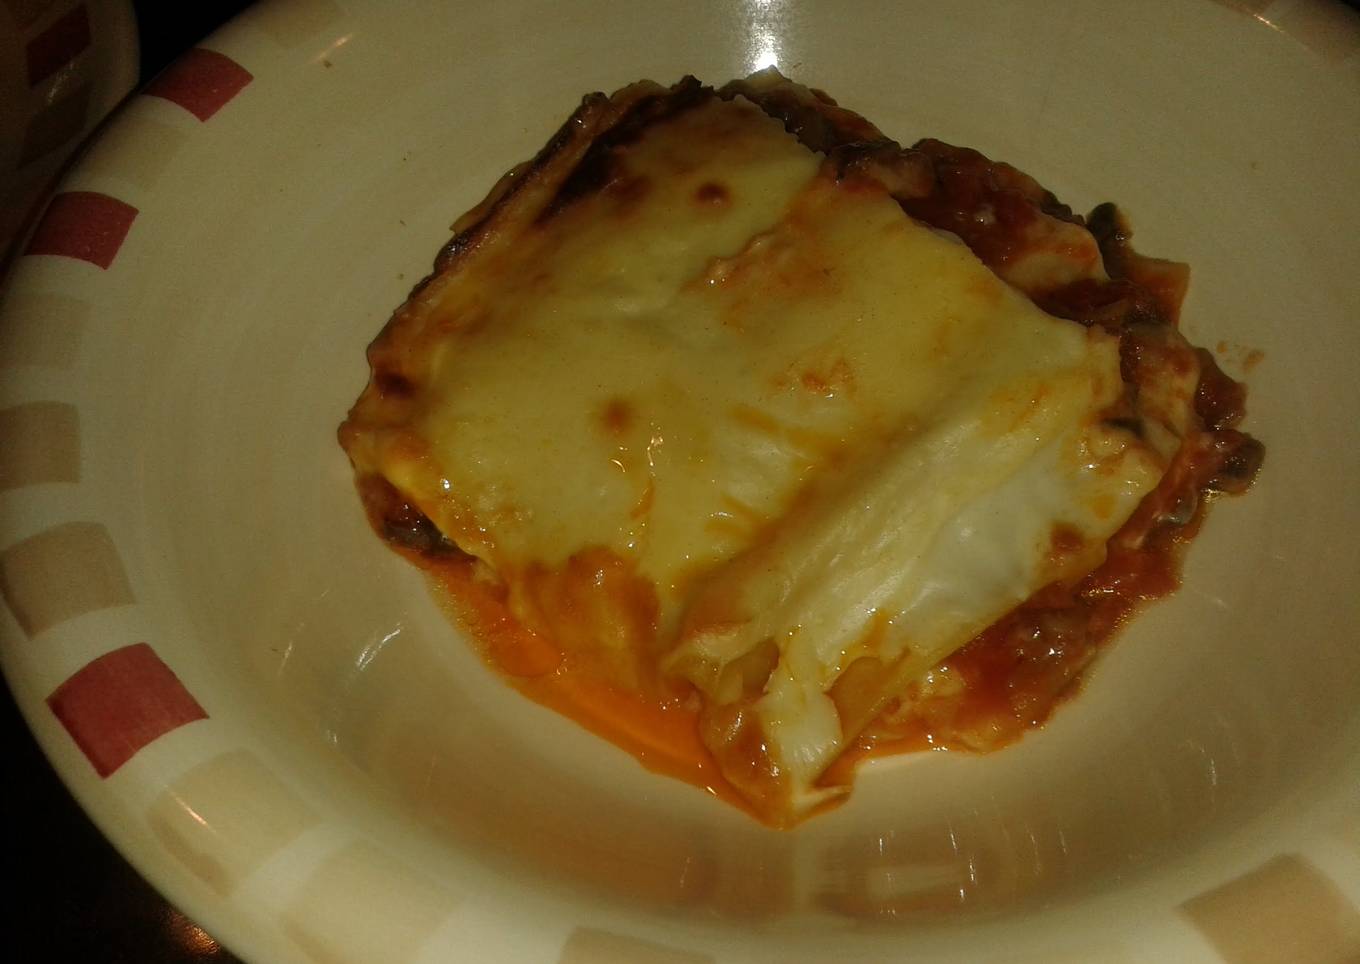 Almu's surprise lasagna